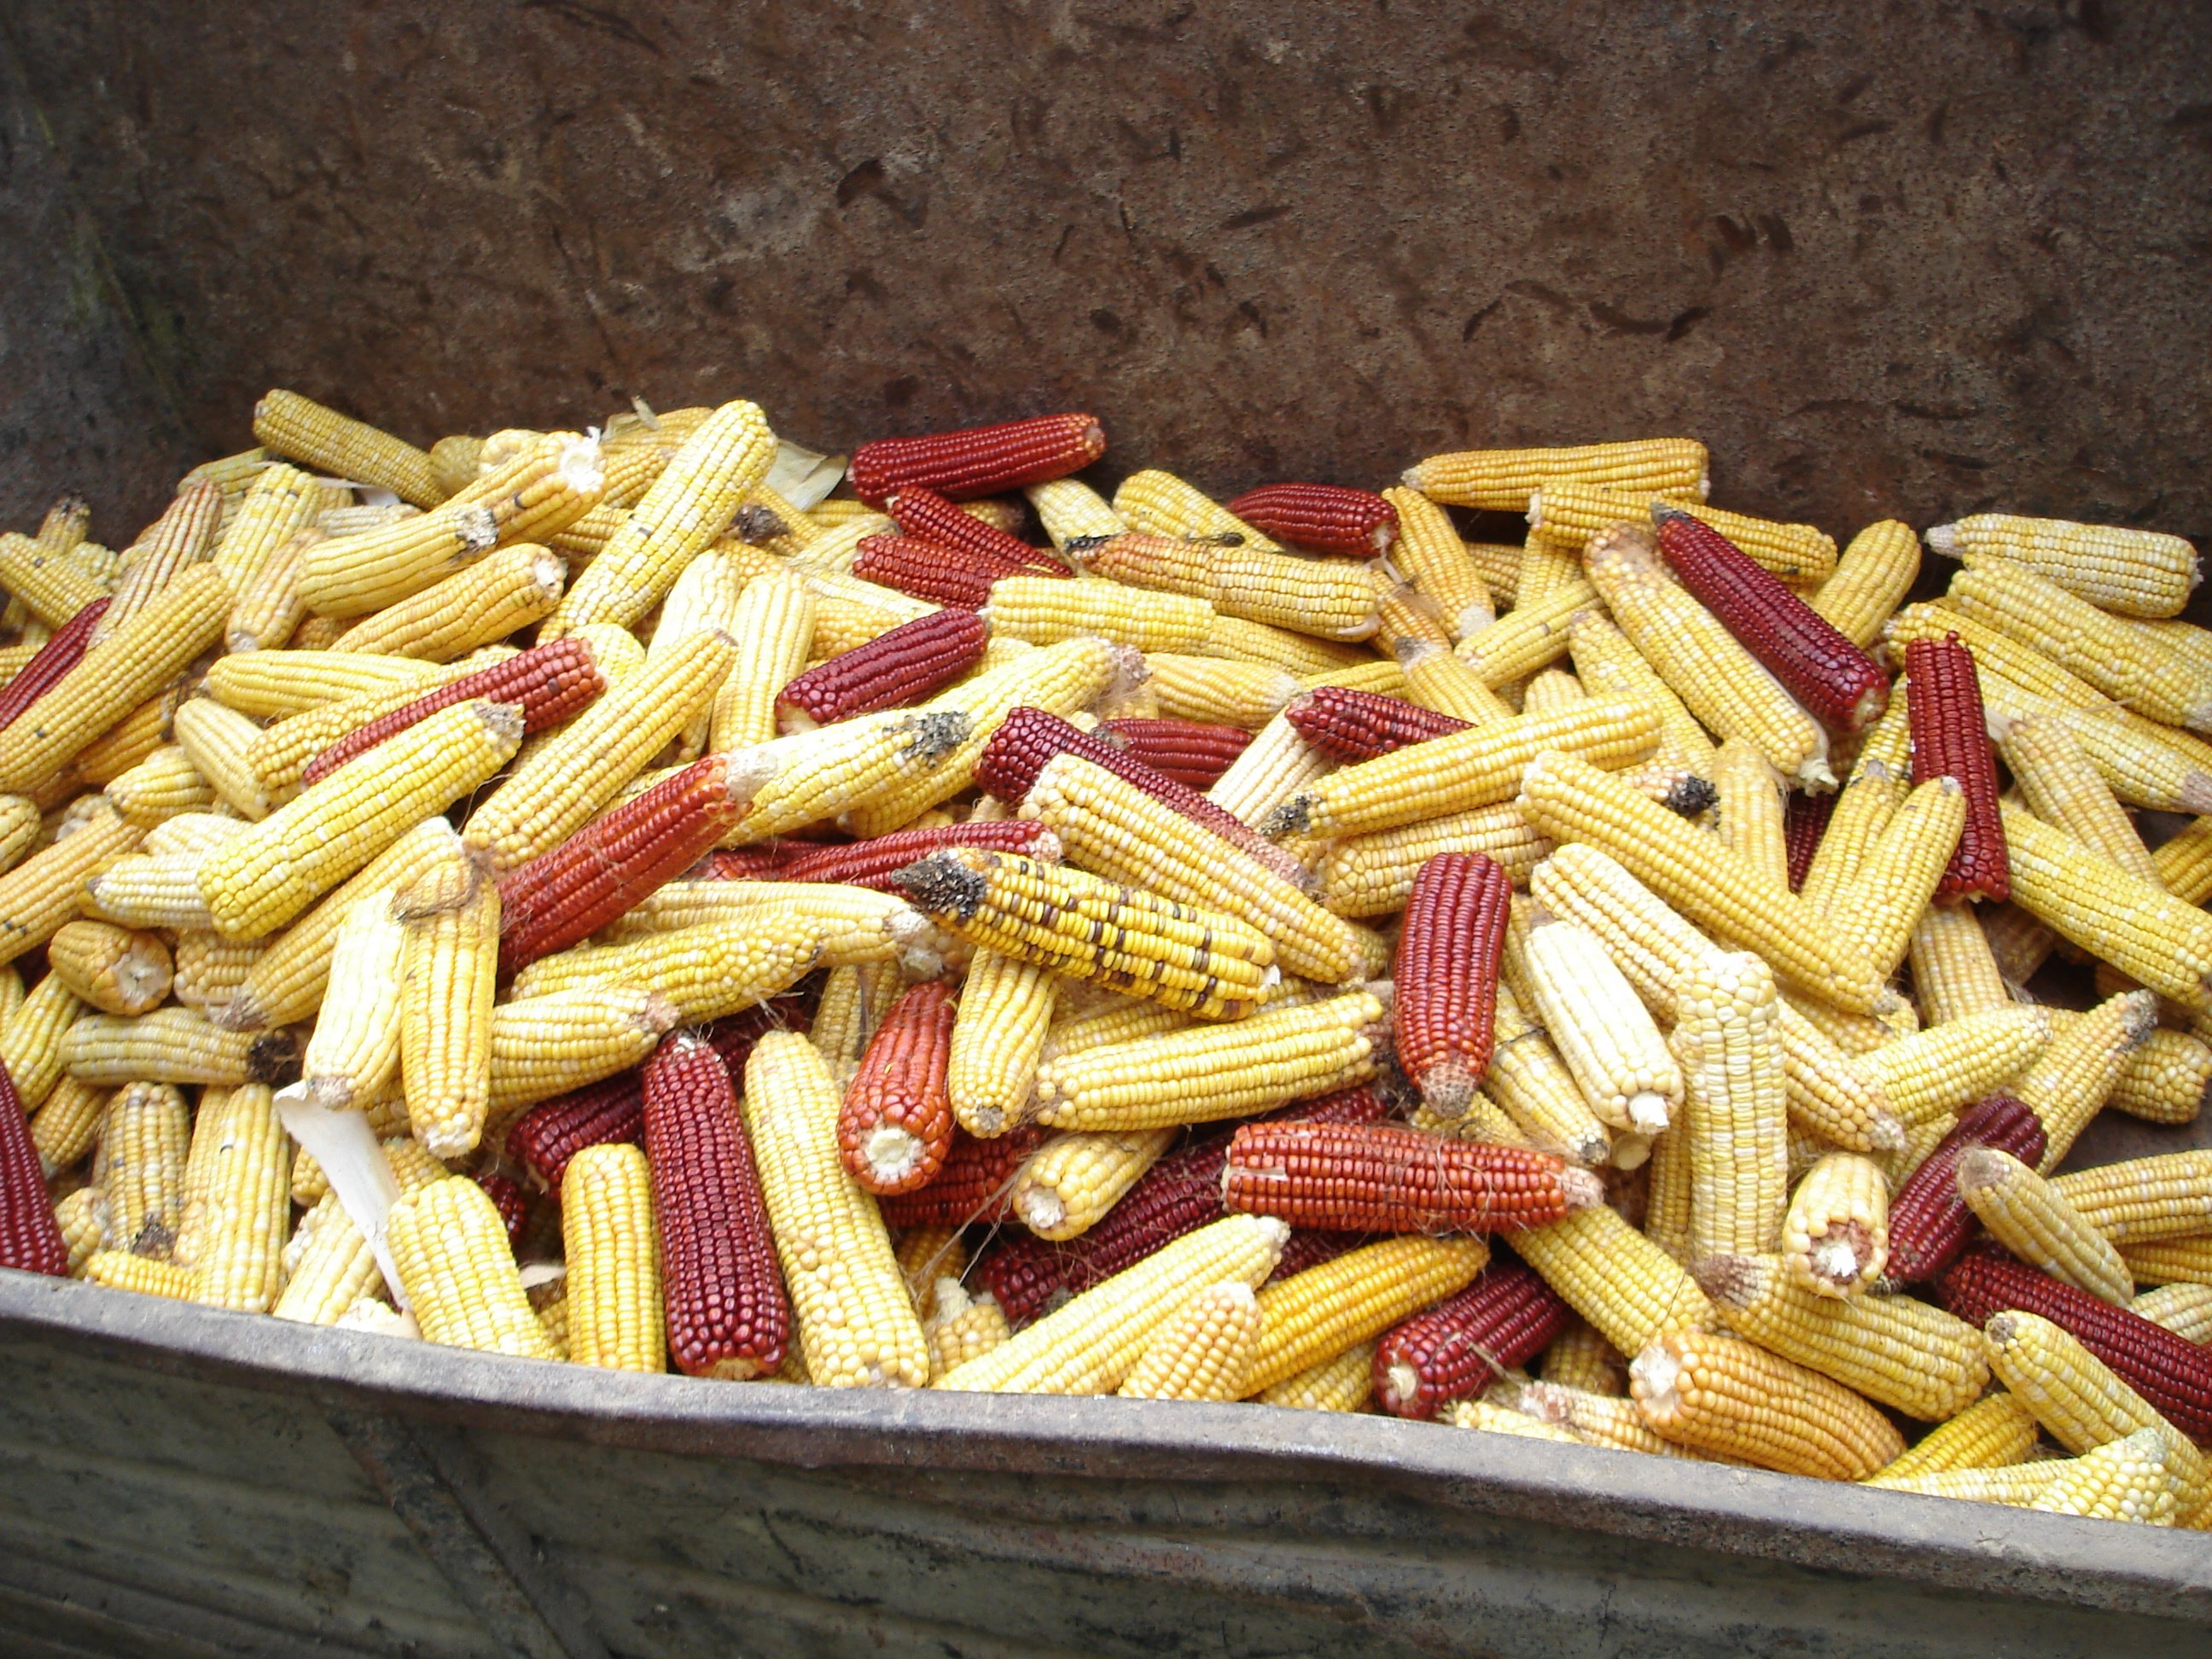 Pour se libérer des semenciers, des agriculteurs redécouvrent le maïs population